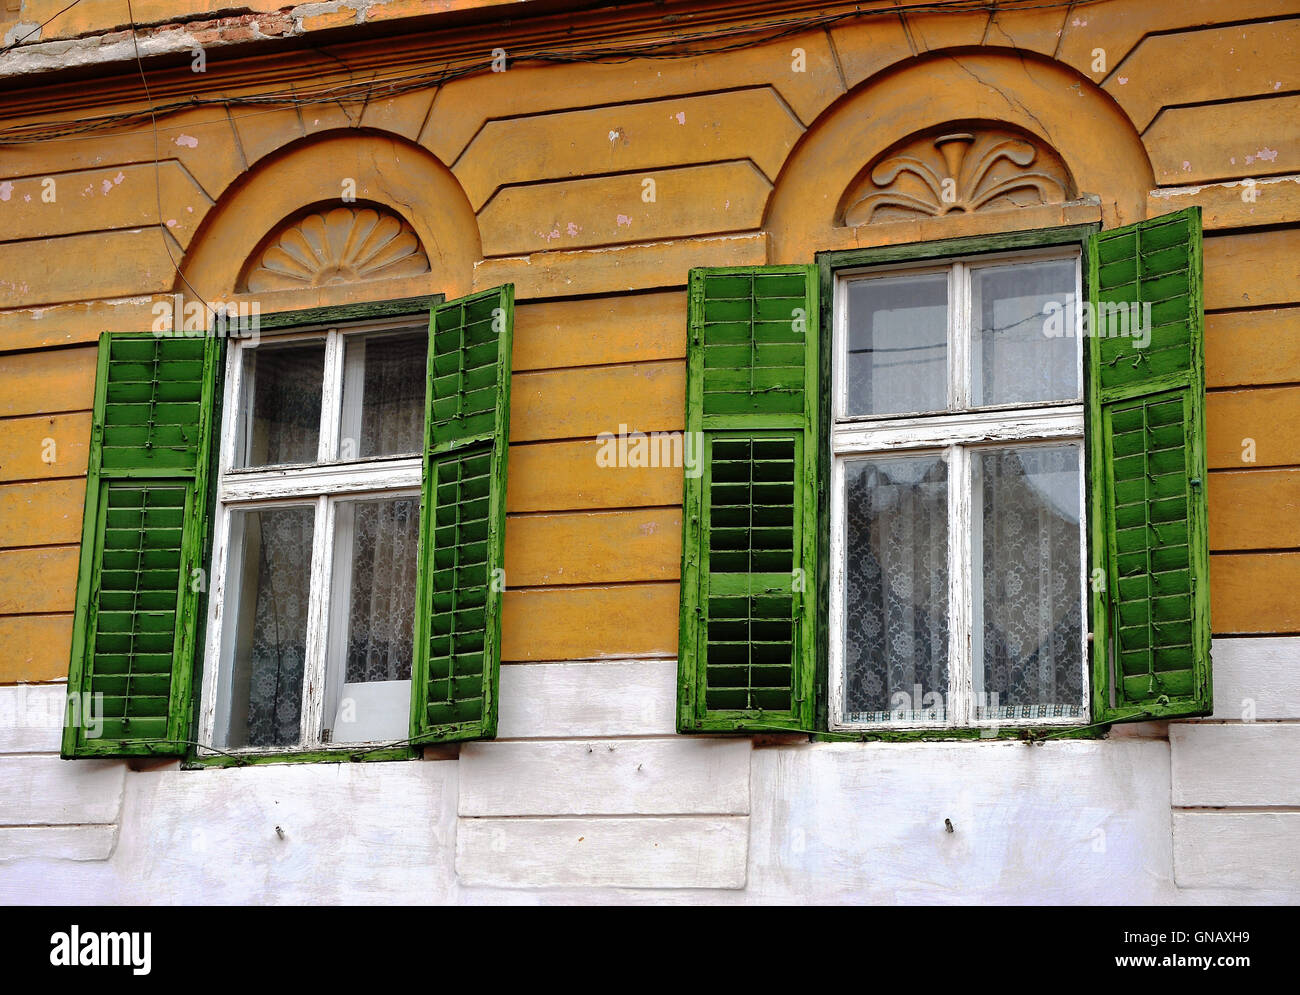 Abrir ventanas de madera con persianas verdes en la pared amarilla Foto de stock